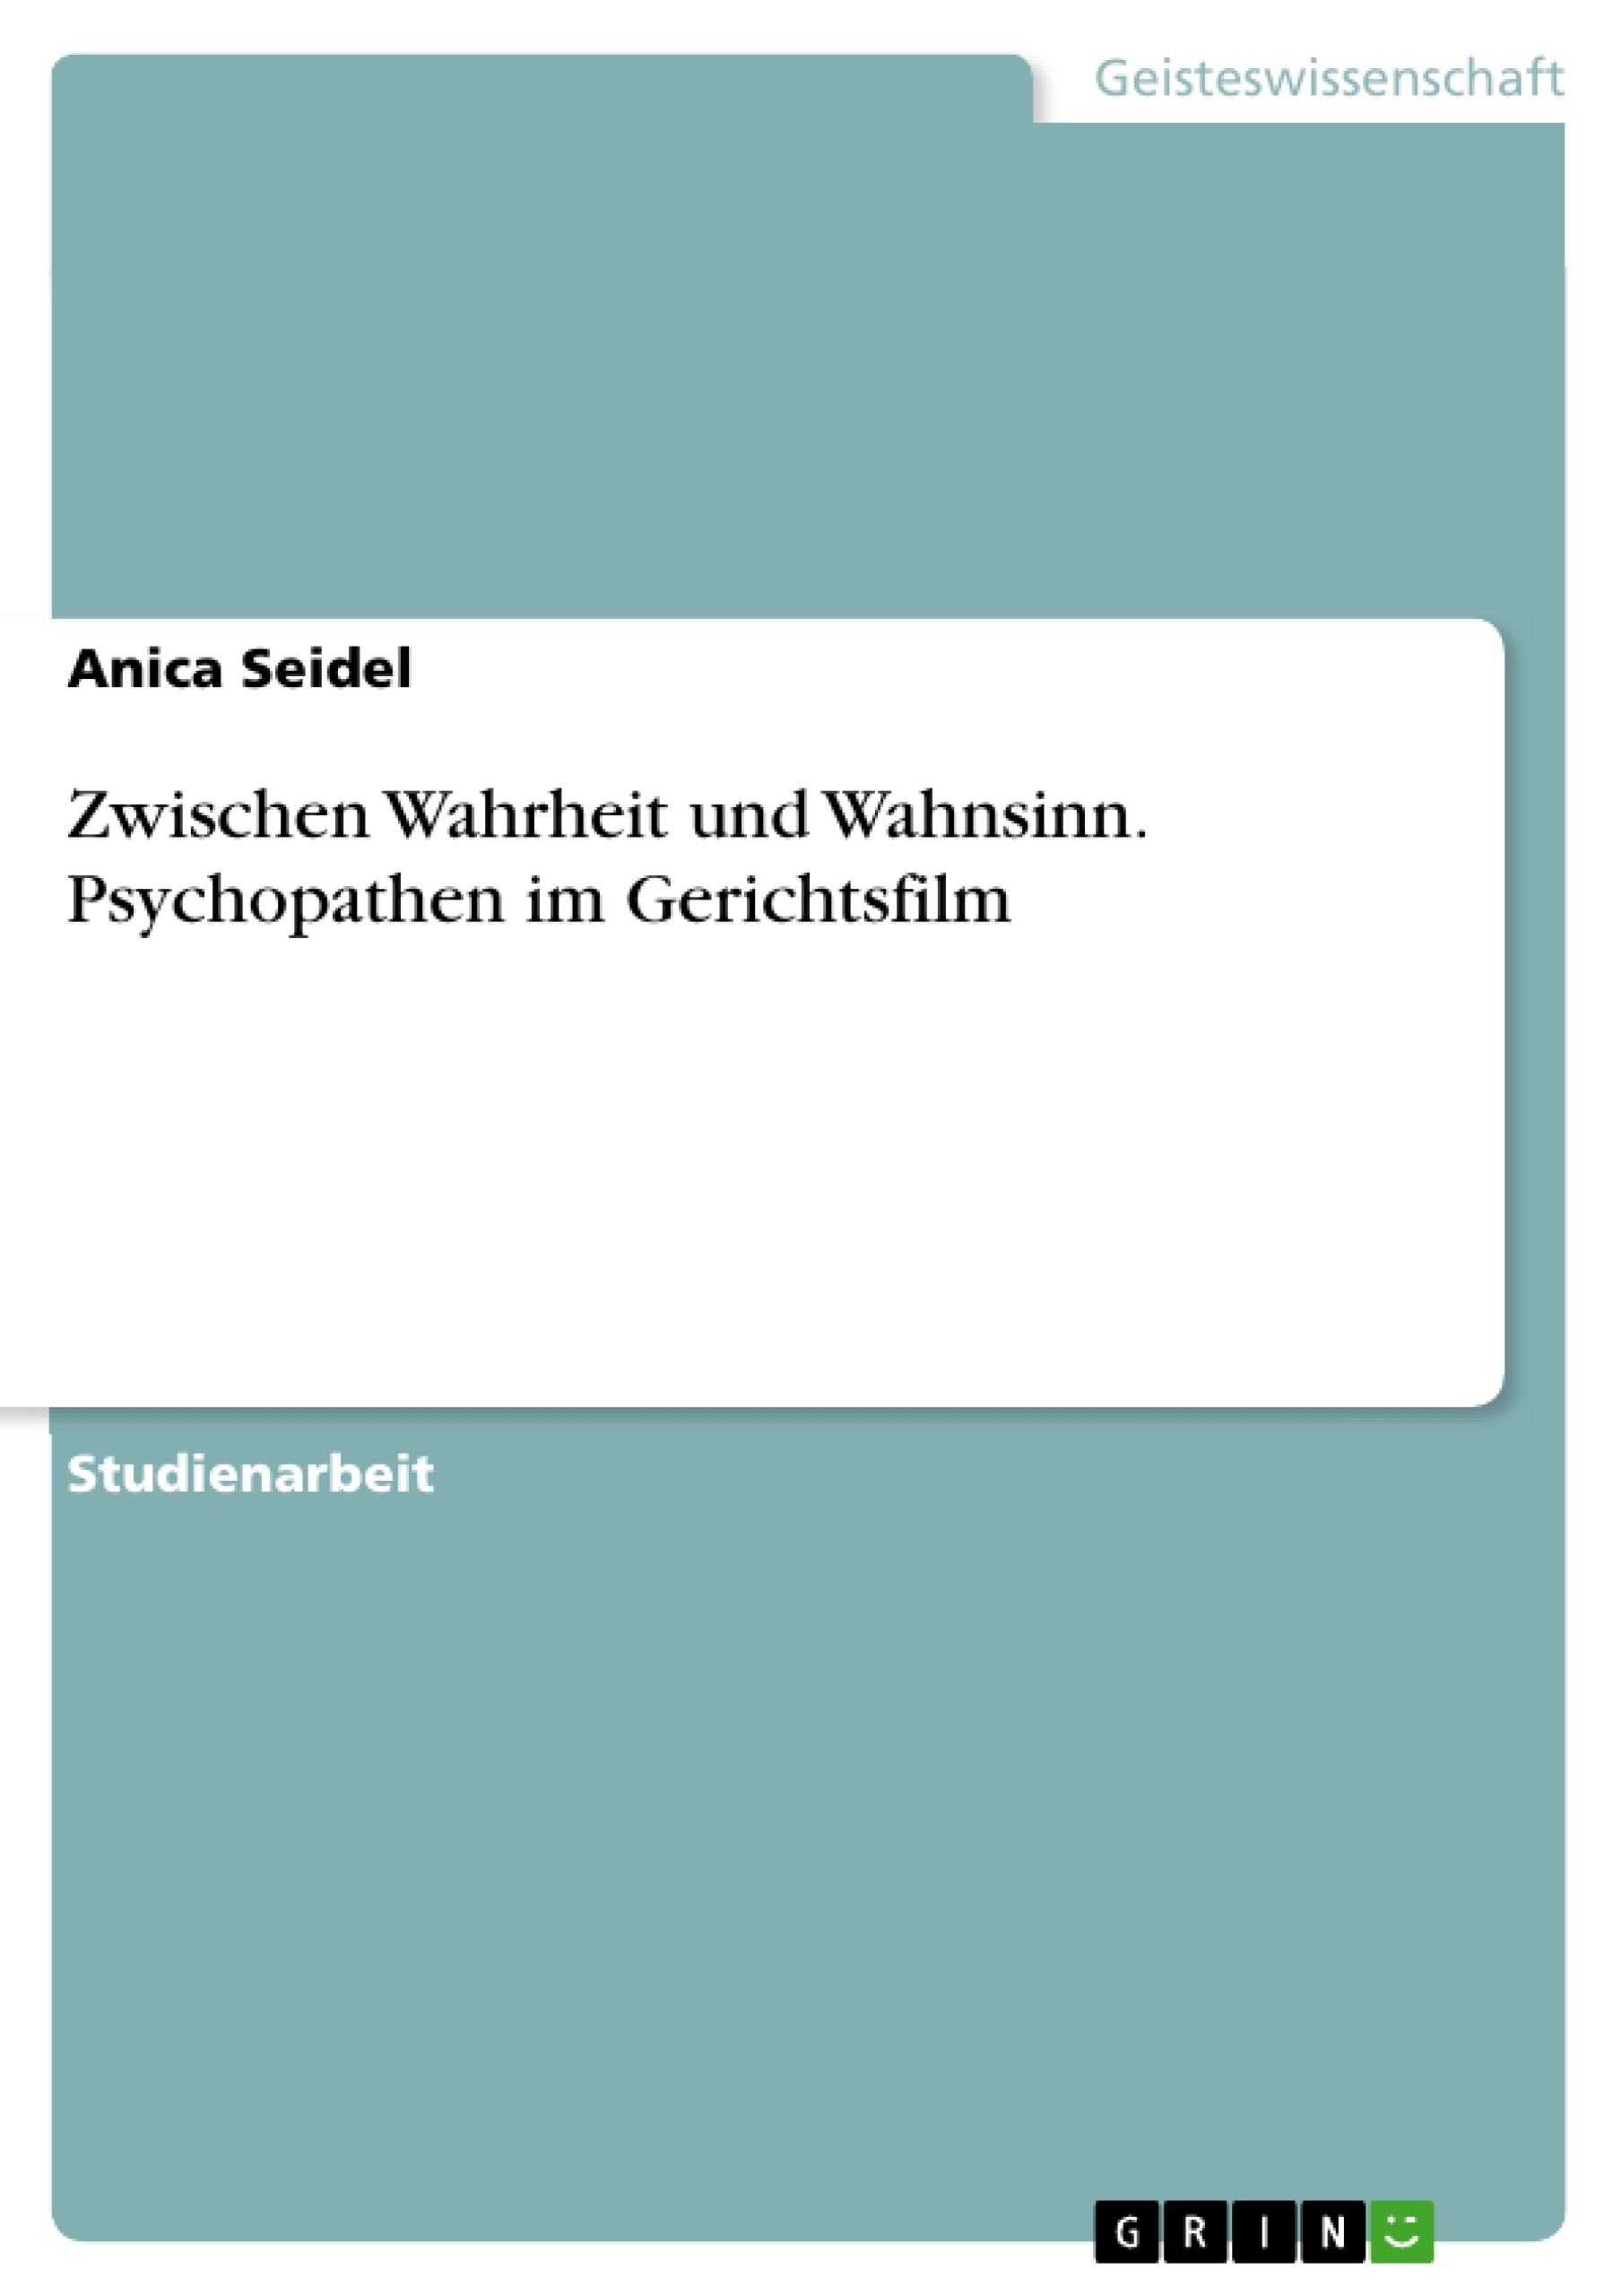 Title: Zwischen Wahrheit und Wahnsinn. Psychopathen im Gerichtsfilm